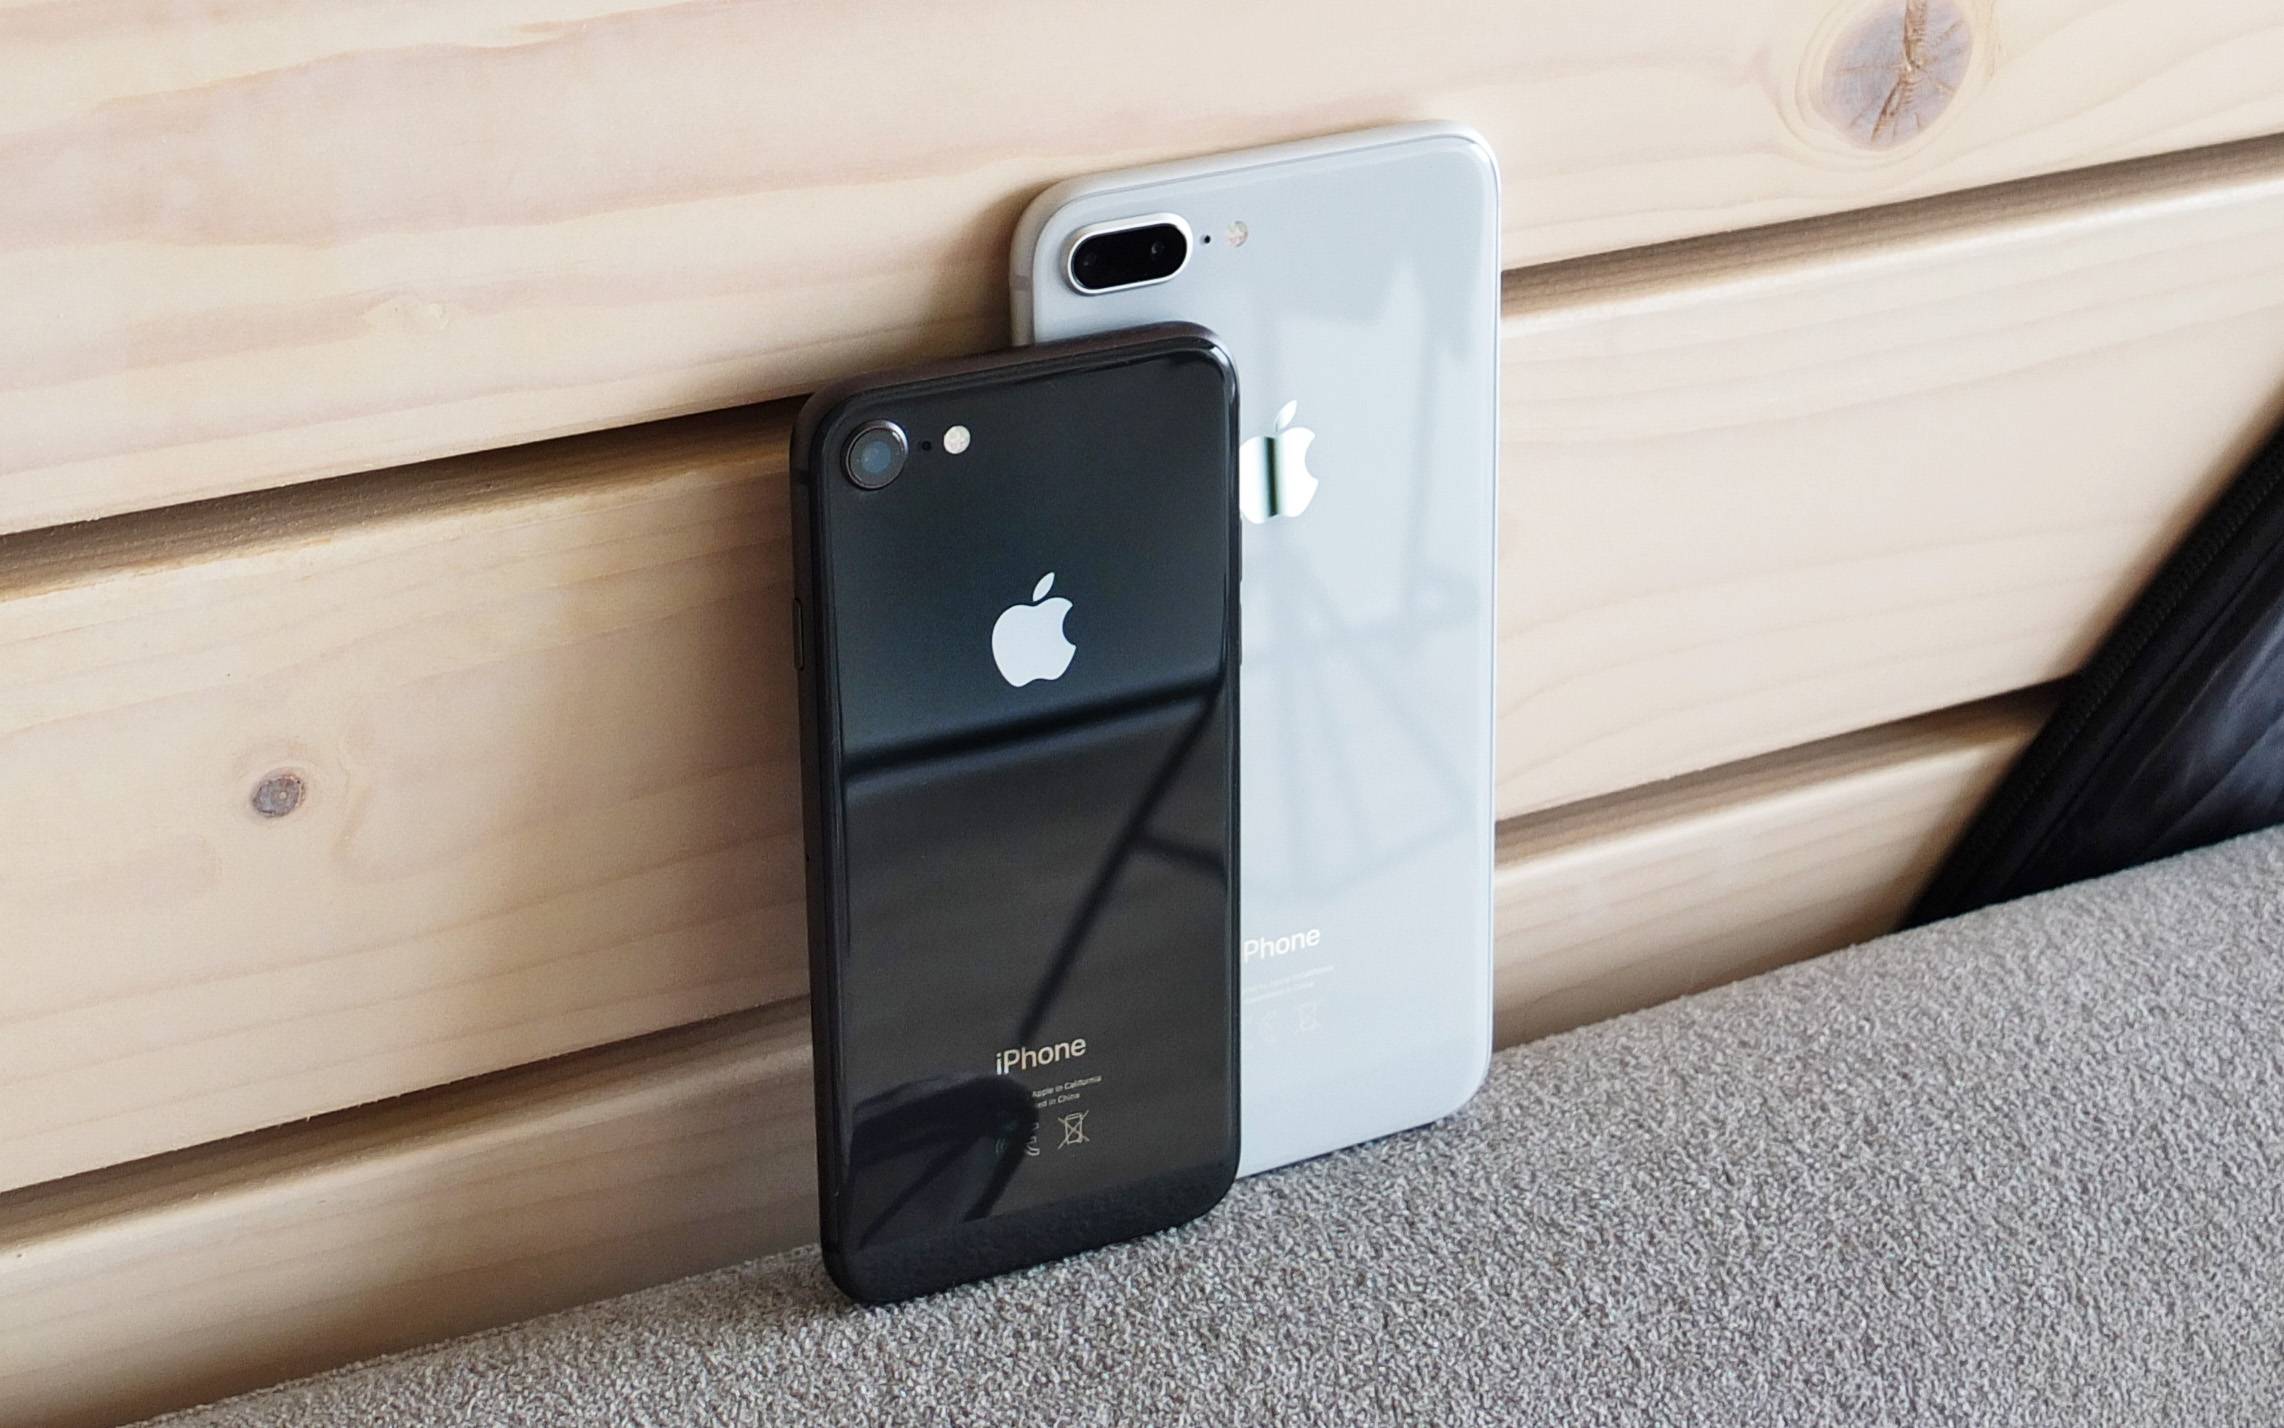 قد نرى شركة آبل تقوم بالكشف عن أربعة هواتف iPhone جديدة هذا العام، وفقا لأدلة جديدة